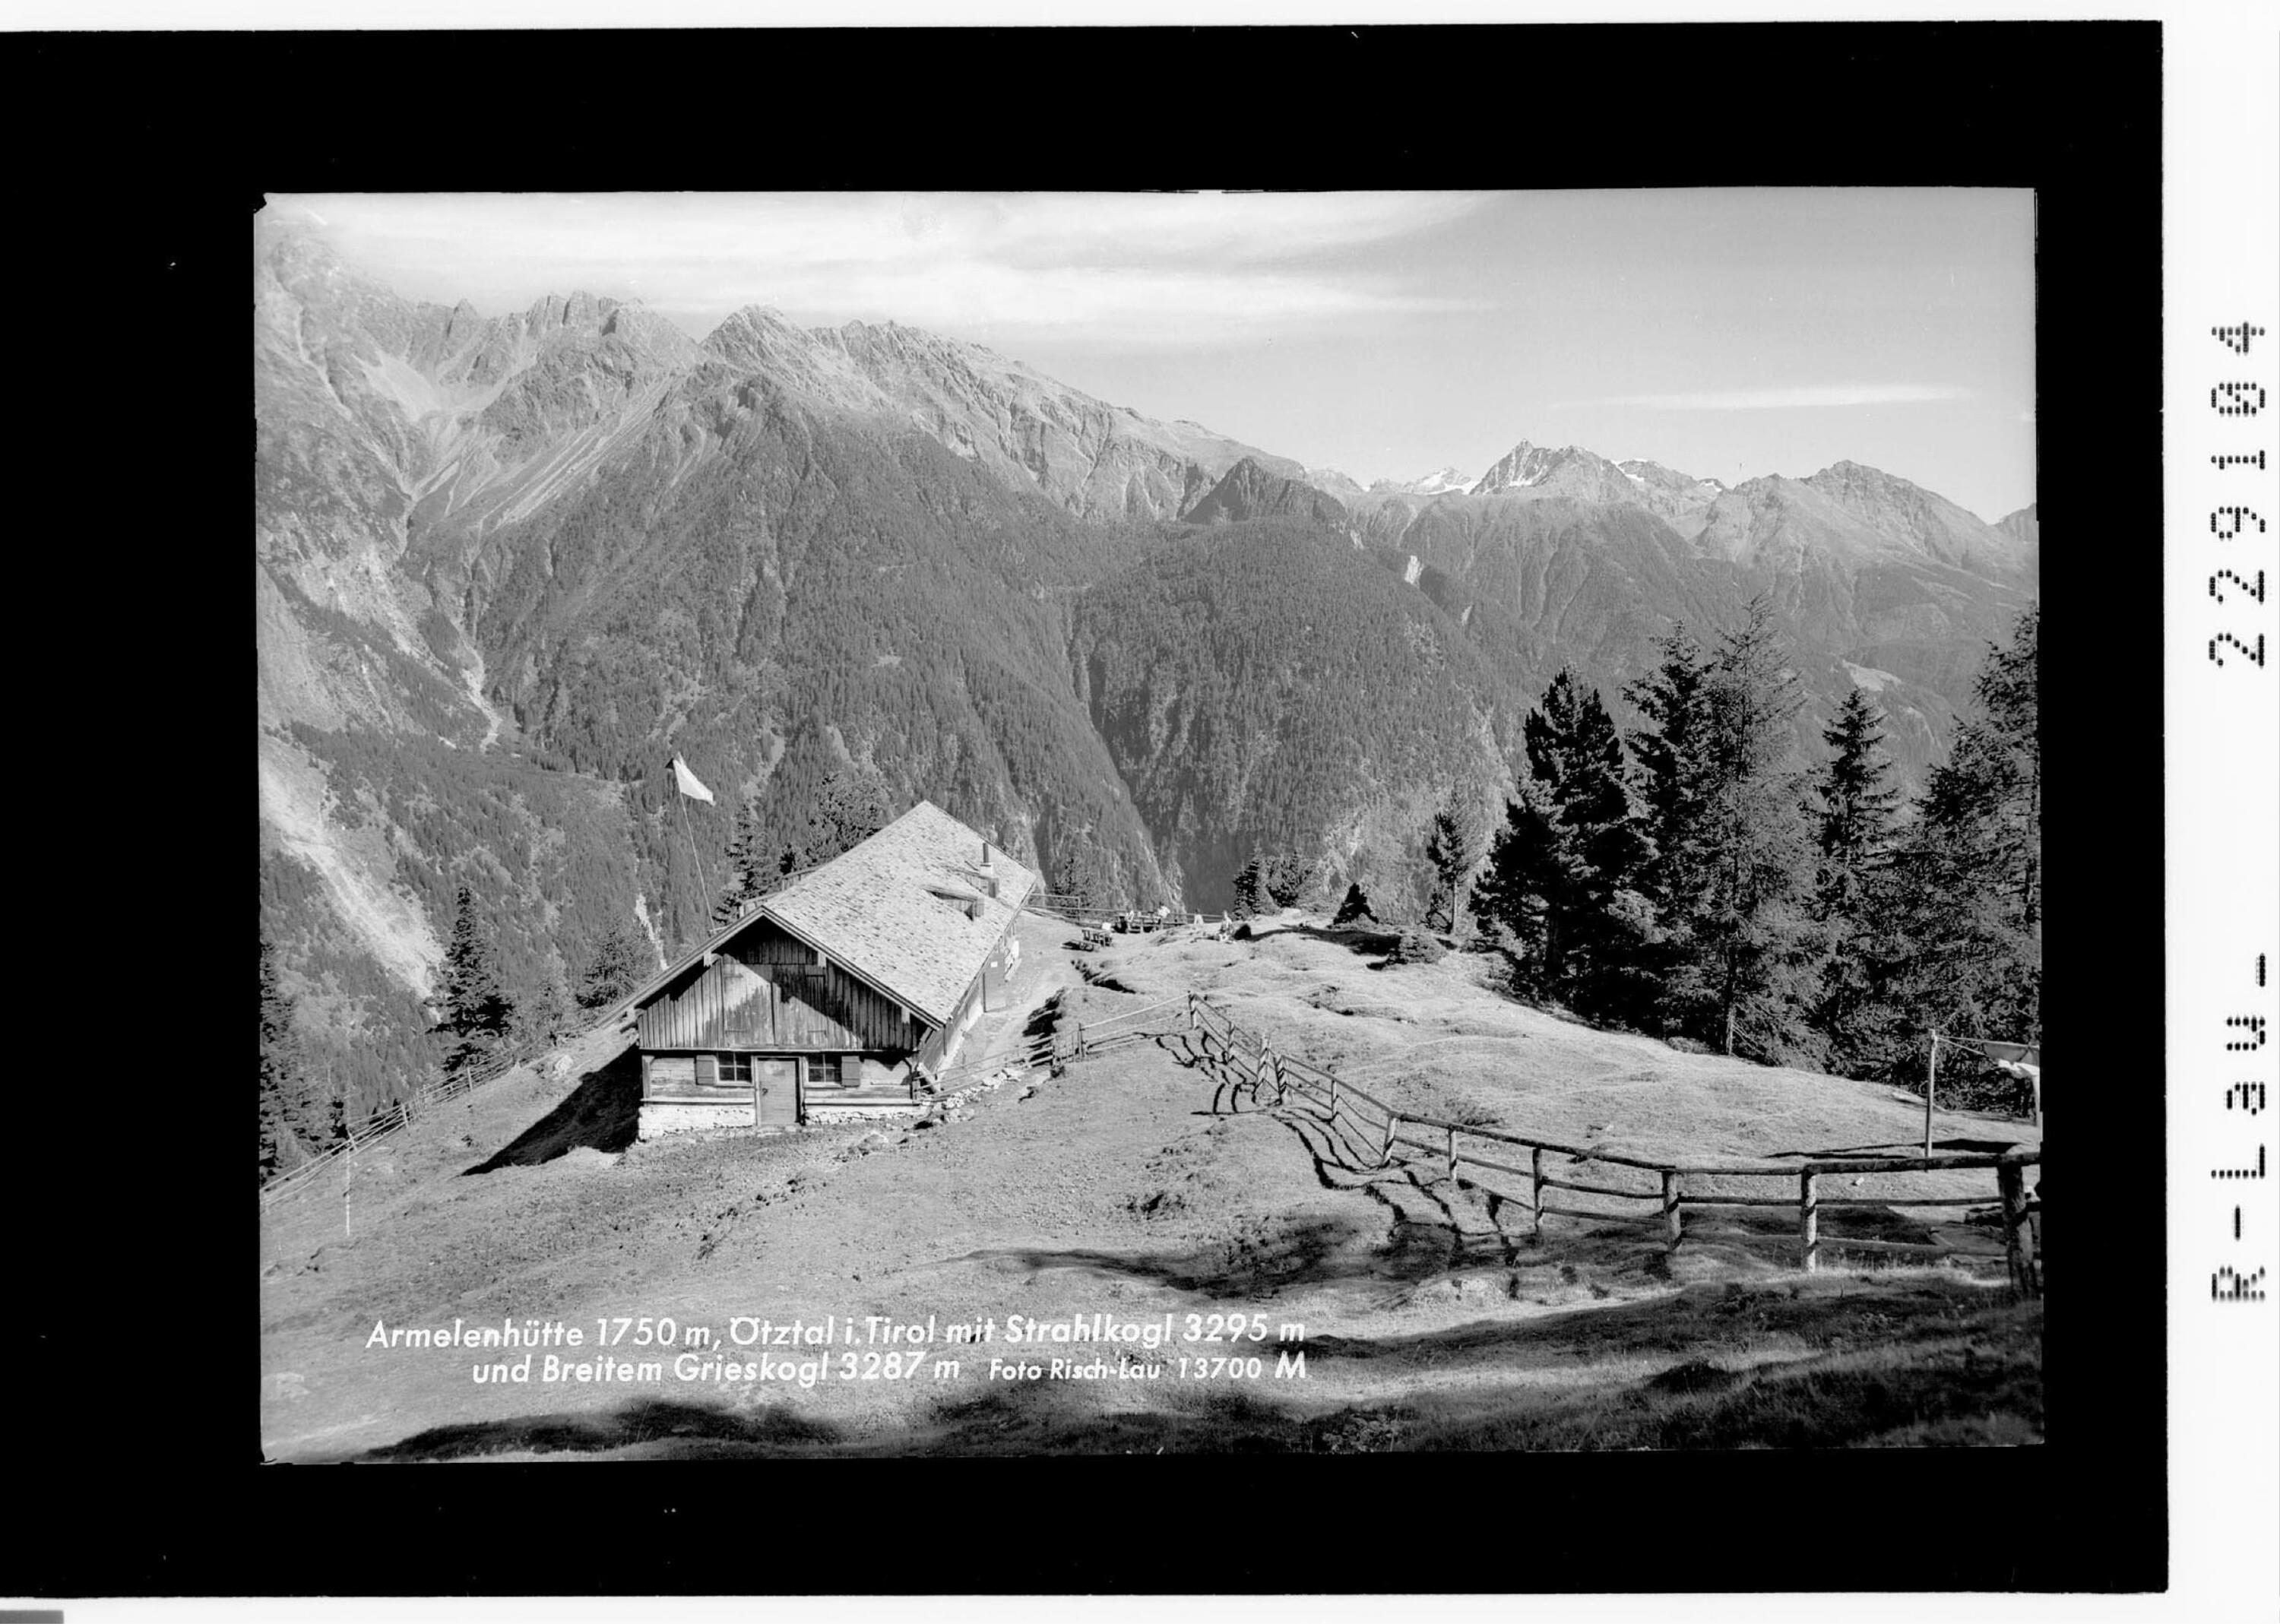 Armelenhütte 1750 m / Ötztal in Tirol mit Strahkogel 3295 m und Breitem Grieskogel 3287 m></div>


    <hr>
    <div class=